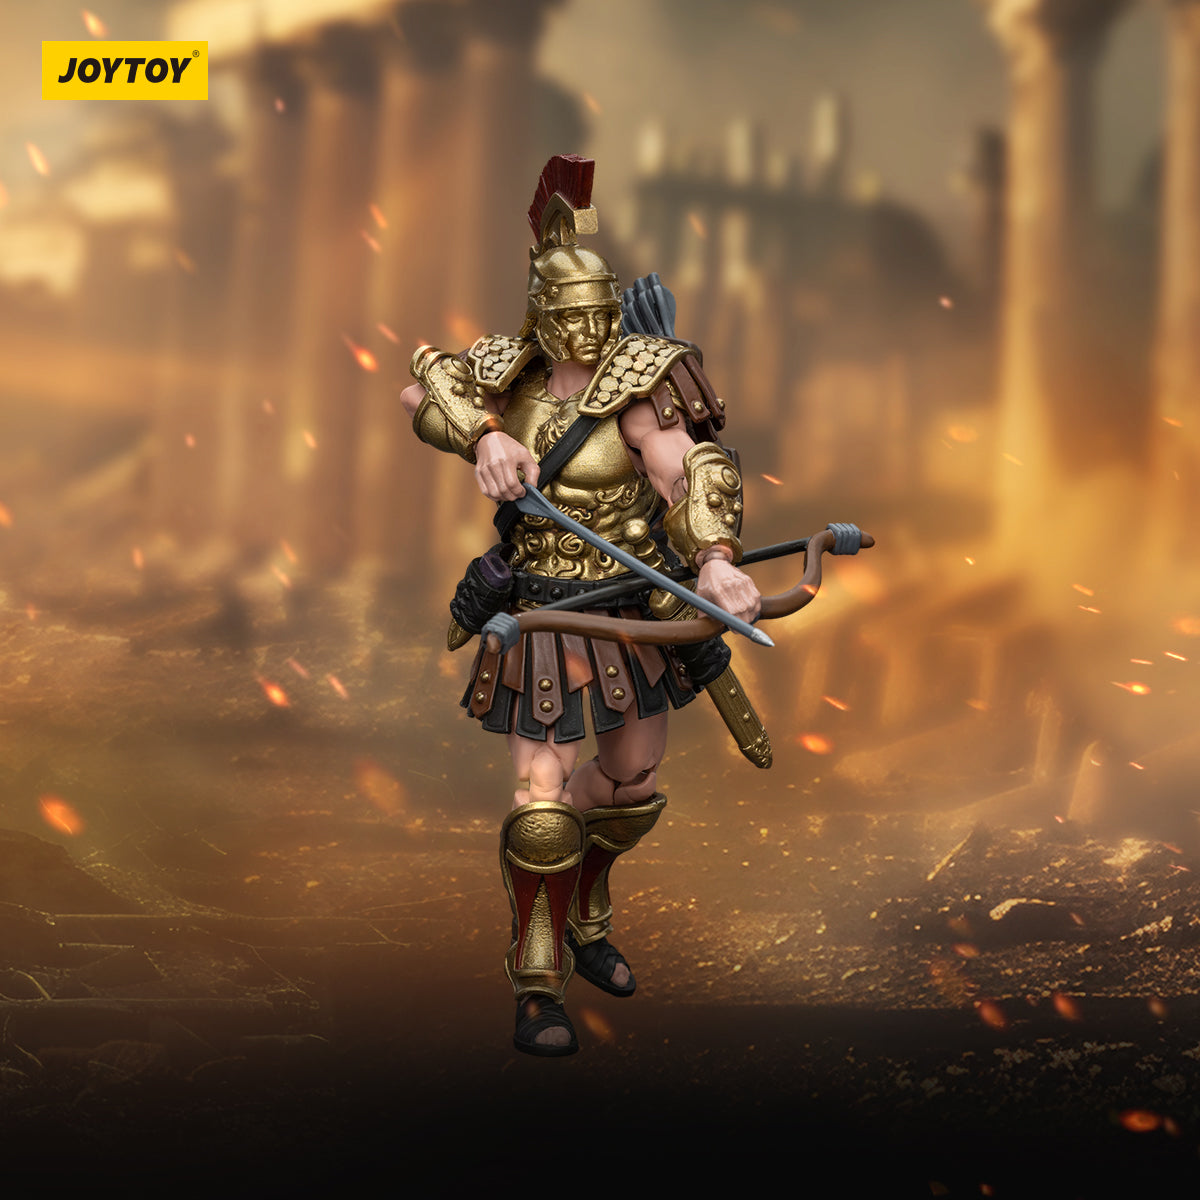 Roman Republic: Cohort IV Centurion: 1/18 Scale Action Figure Joy Toy